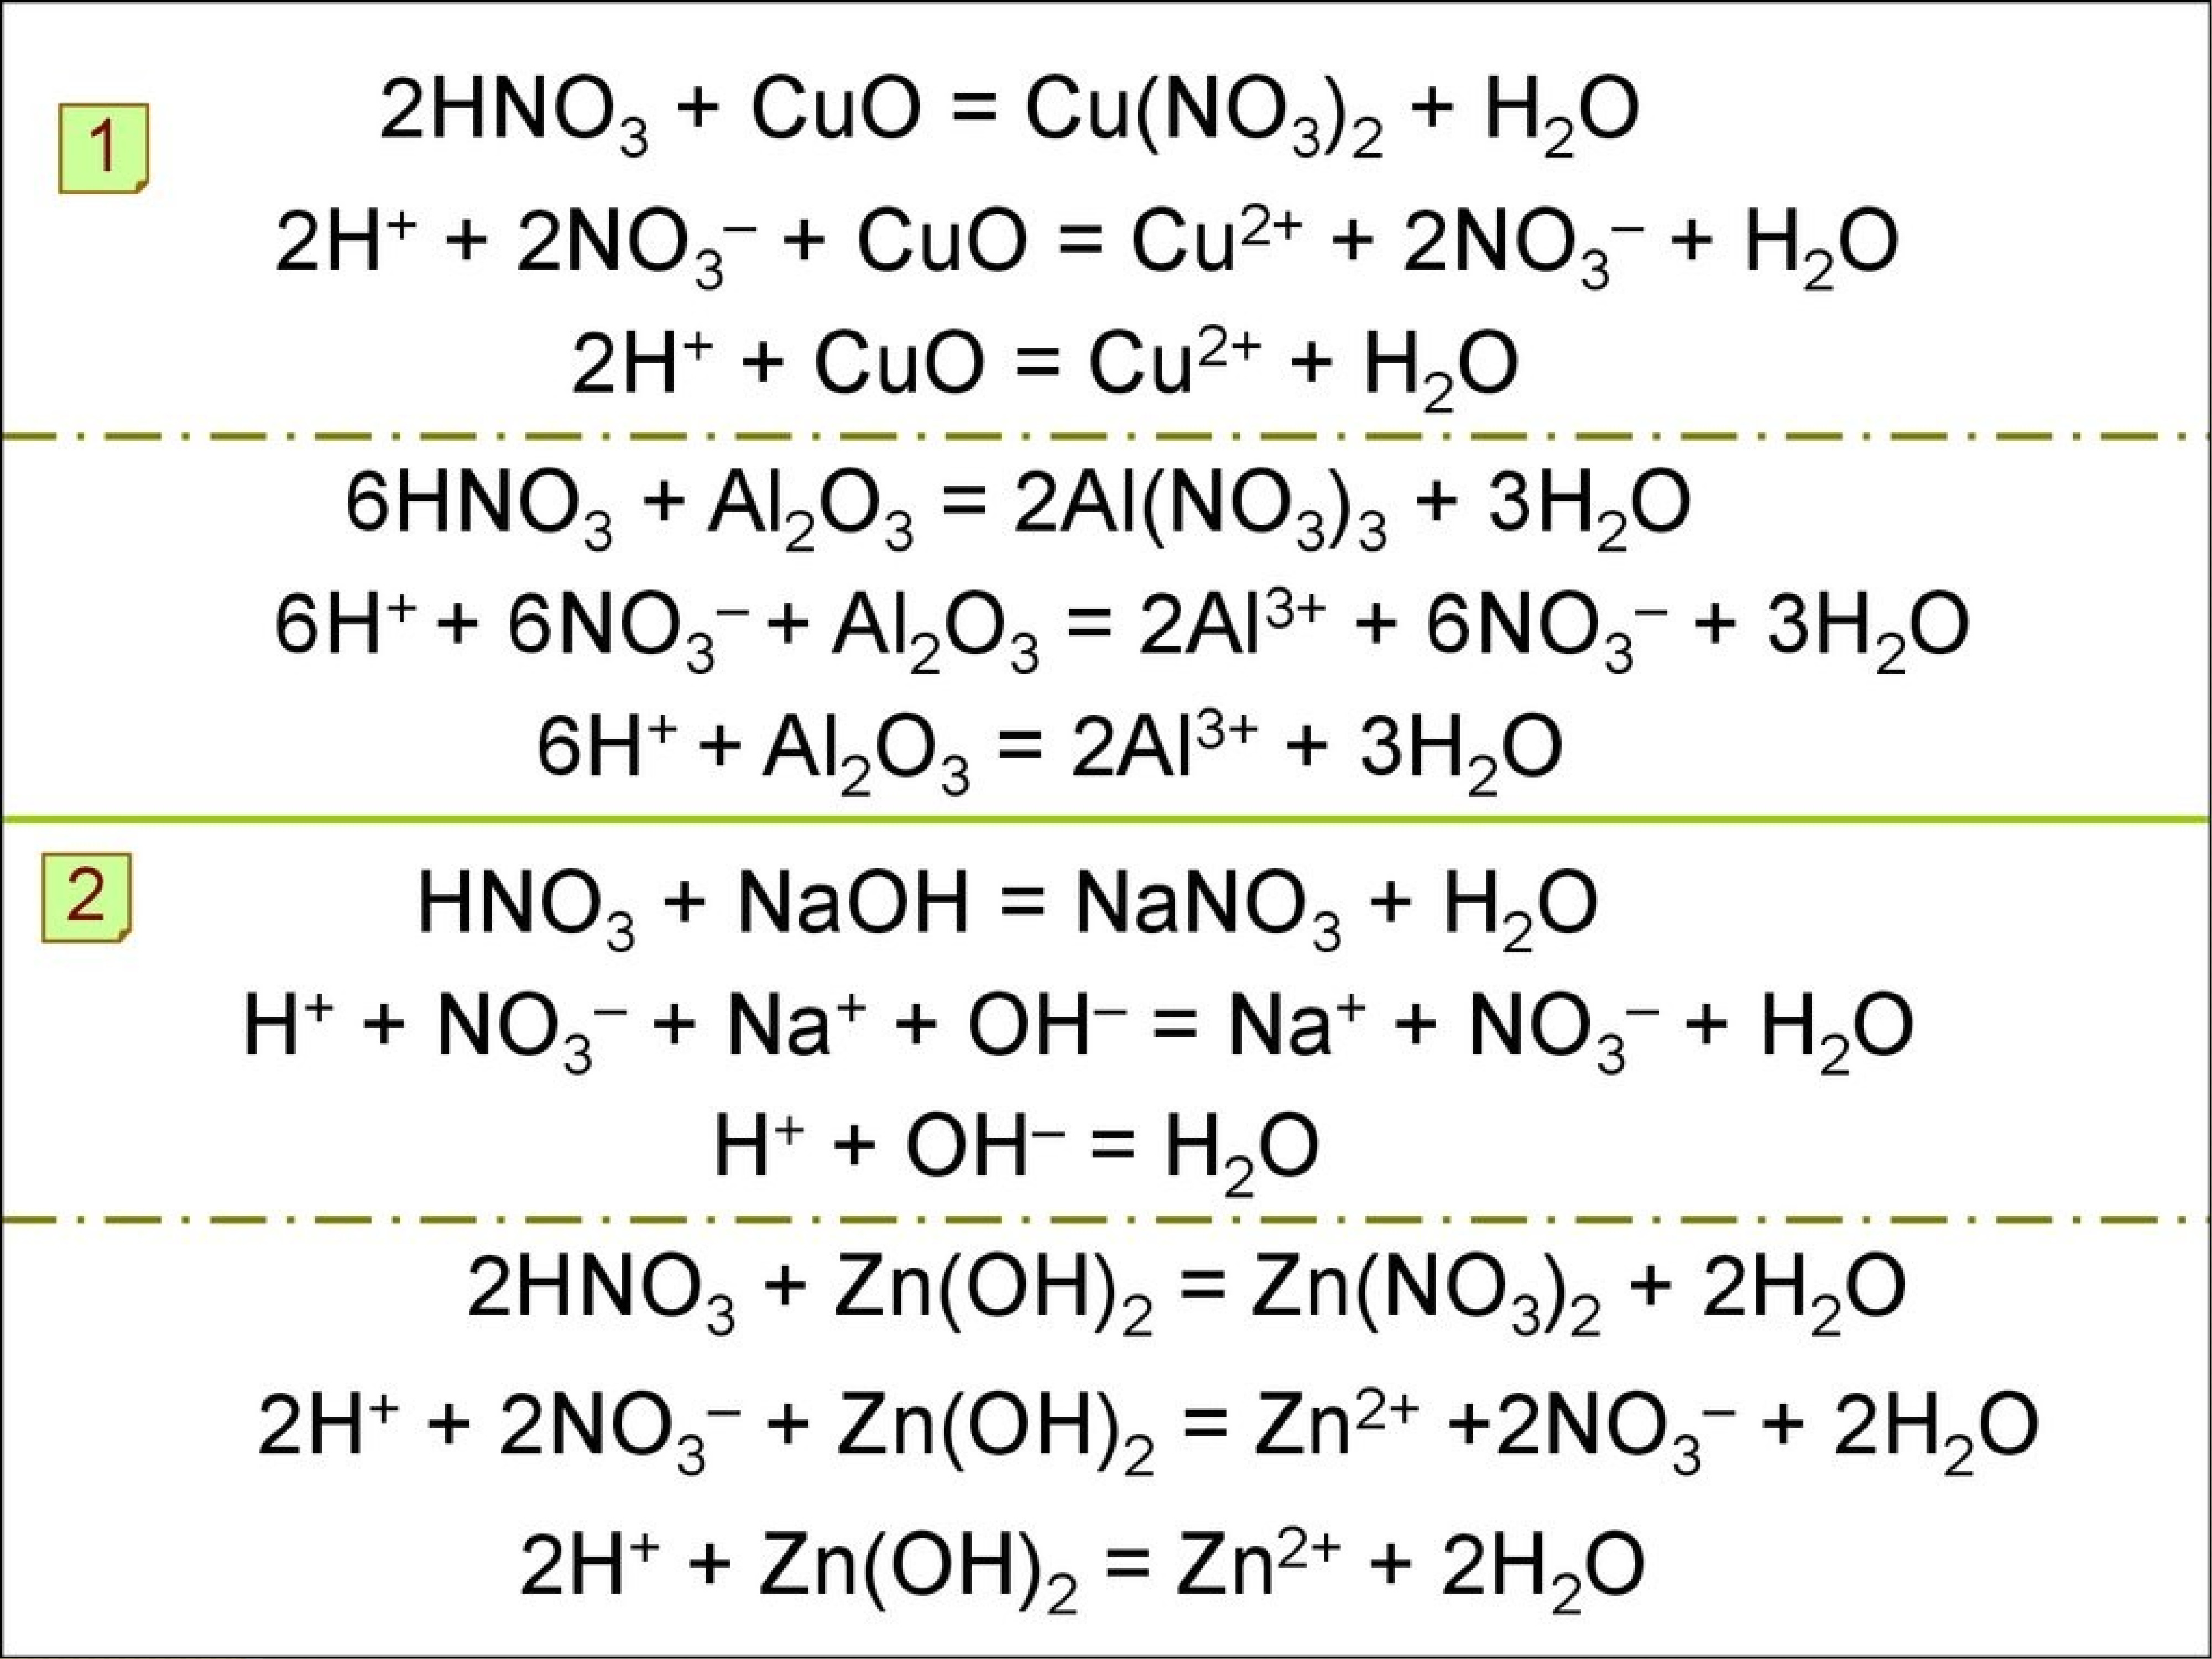 Zn mgo hcl. Al2o3 и азотная кислота. Cu hno3 h2o2. No2 hno2 реакция. Cu no3 Cuo no2 o2 коэффициенты.